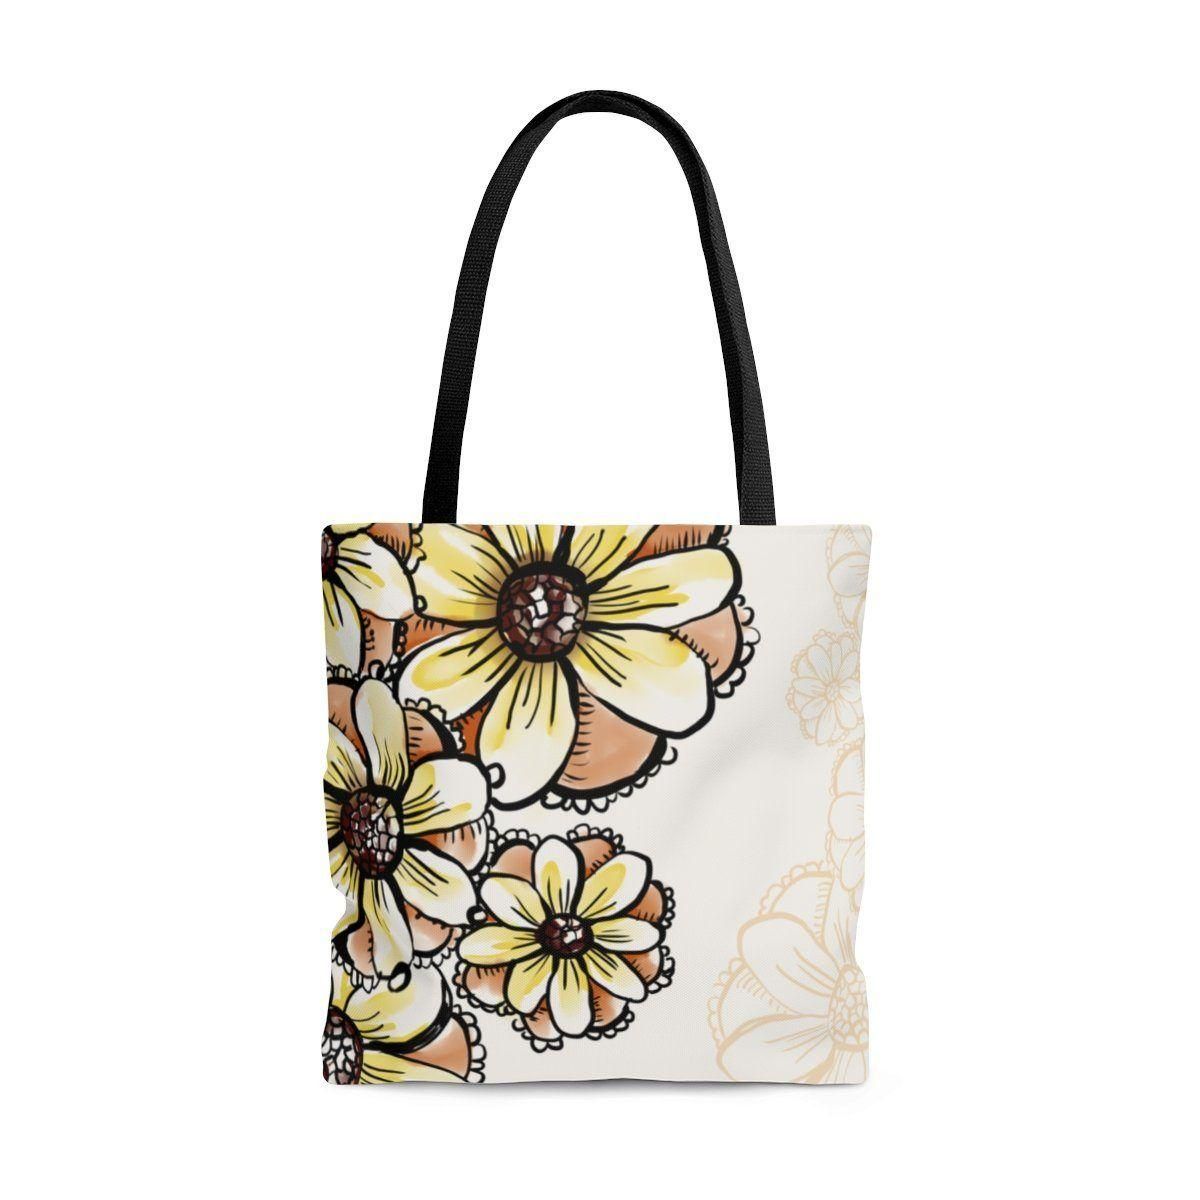 Beautiful Boho Floral Printed Tote Bag